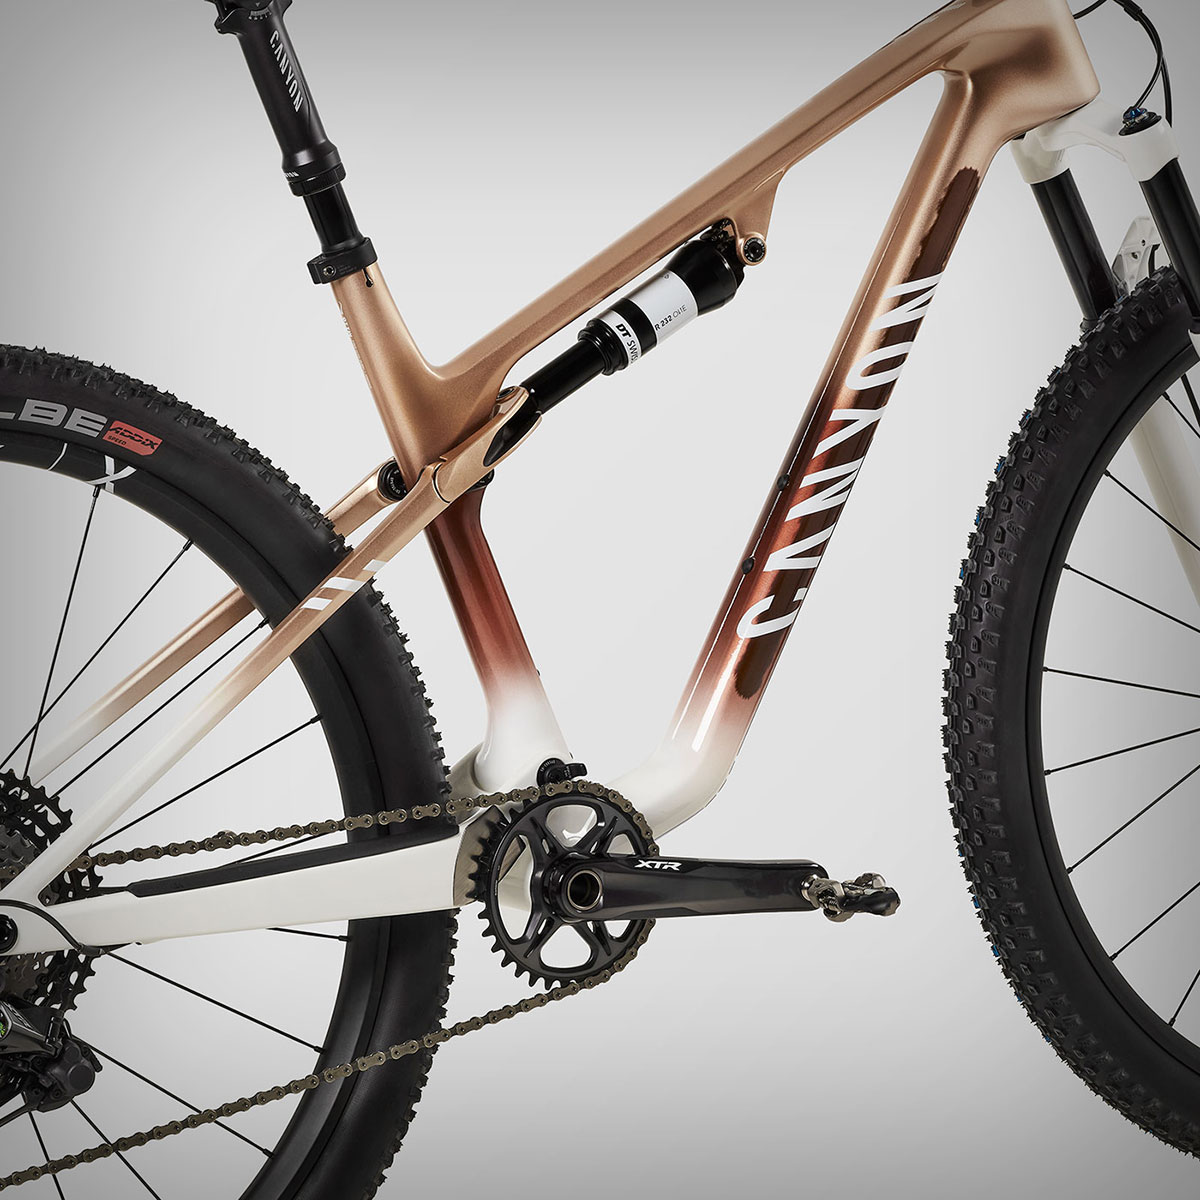 Canyon Lux World Cup CFR Untamed, una exclusiva bicicleta inspirada en la Absa Cape Epic en edición limitada a 100 unidades